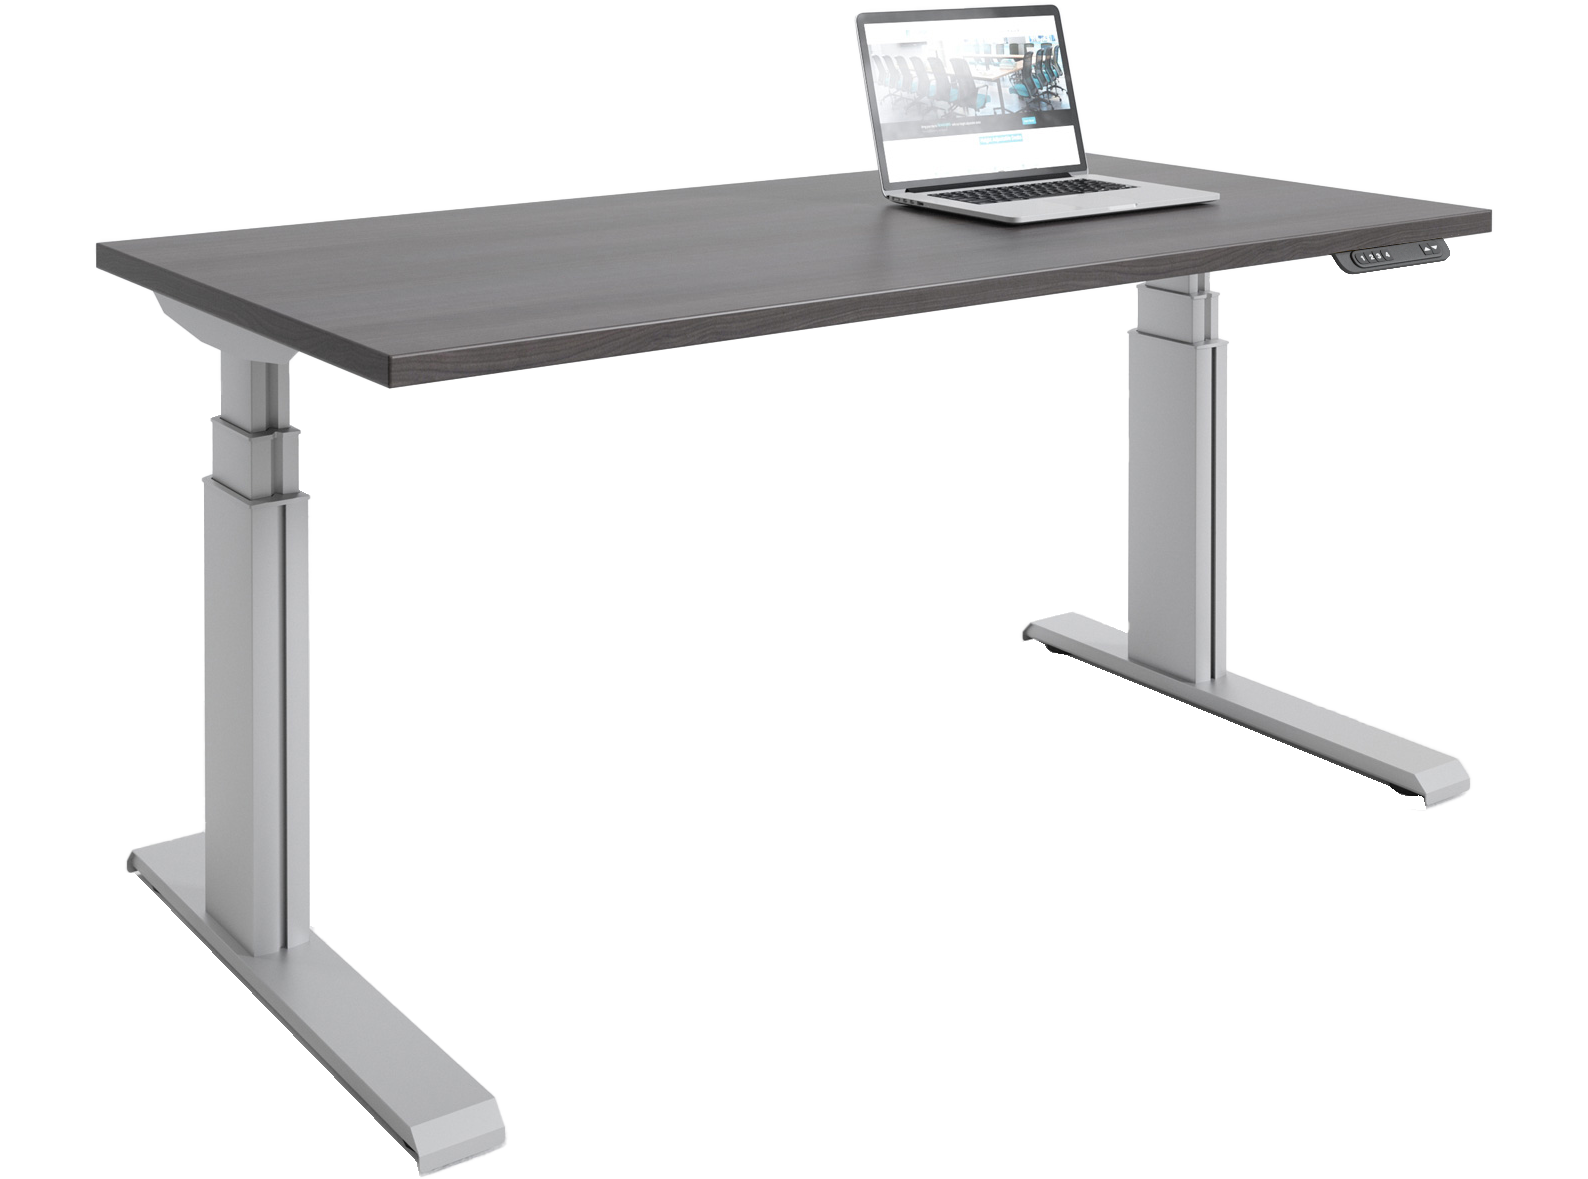 Eliuth Height Adjustable Standing Desk